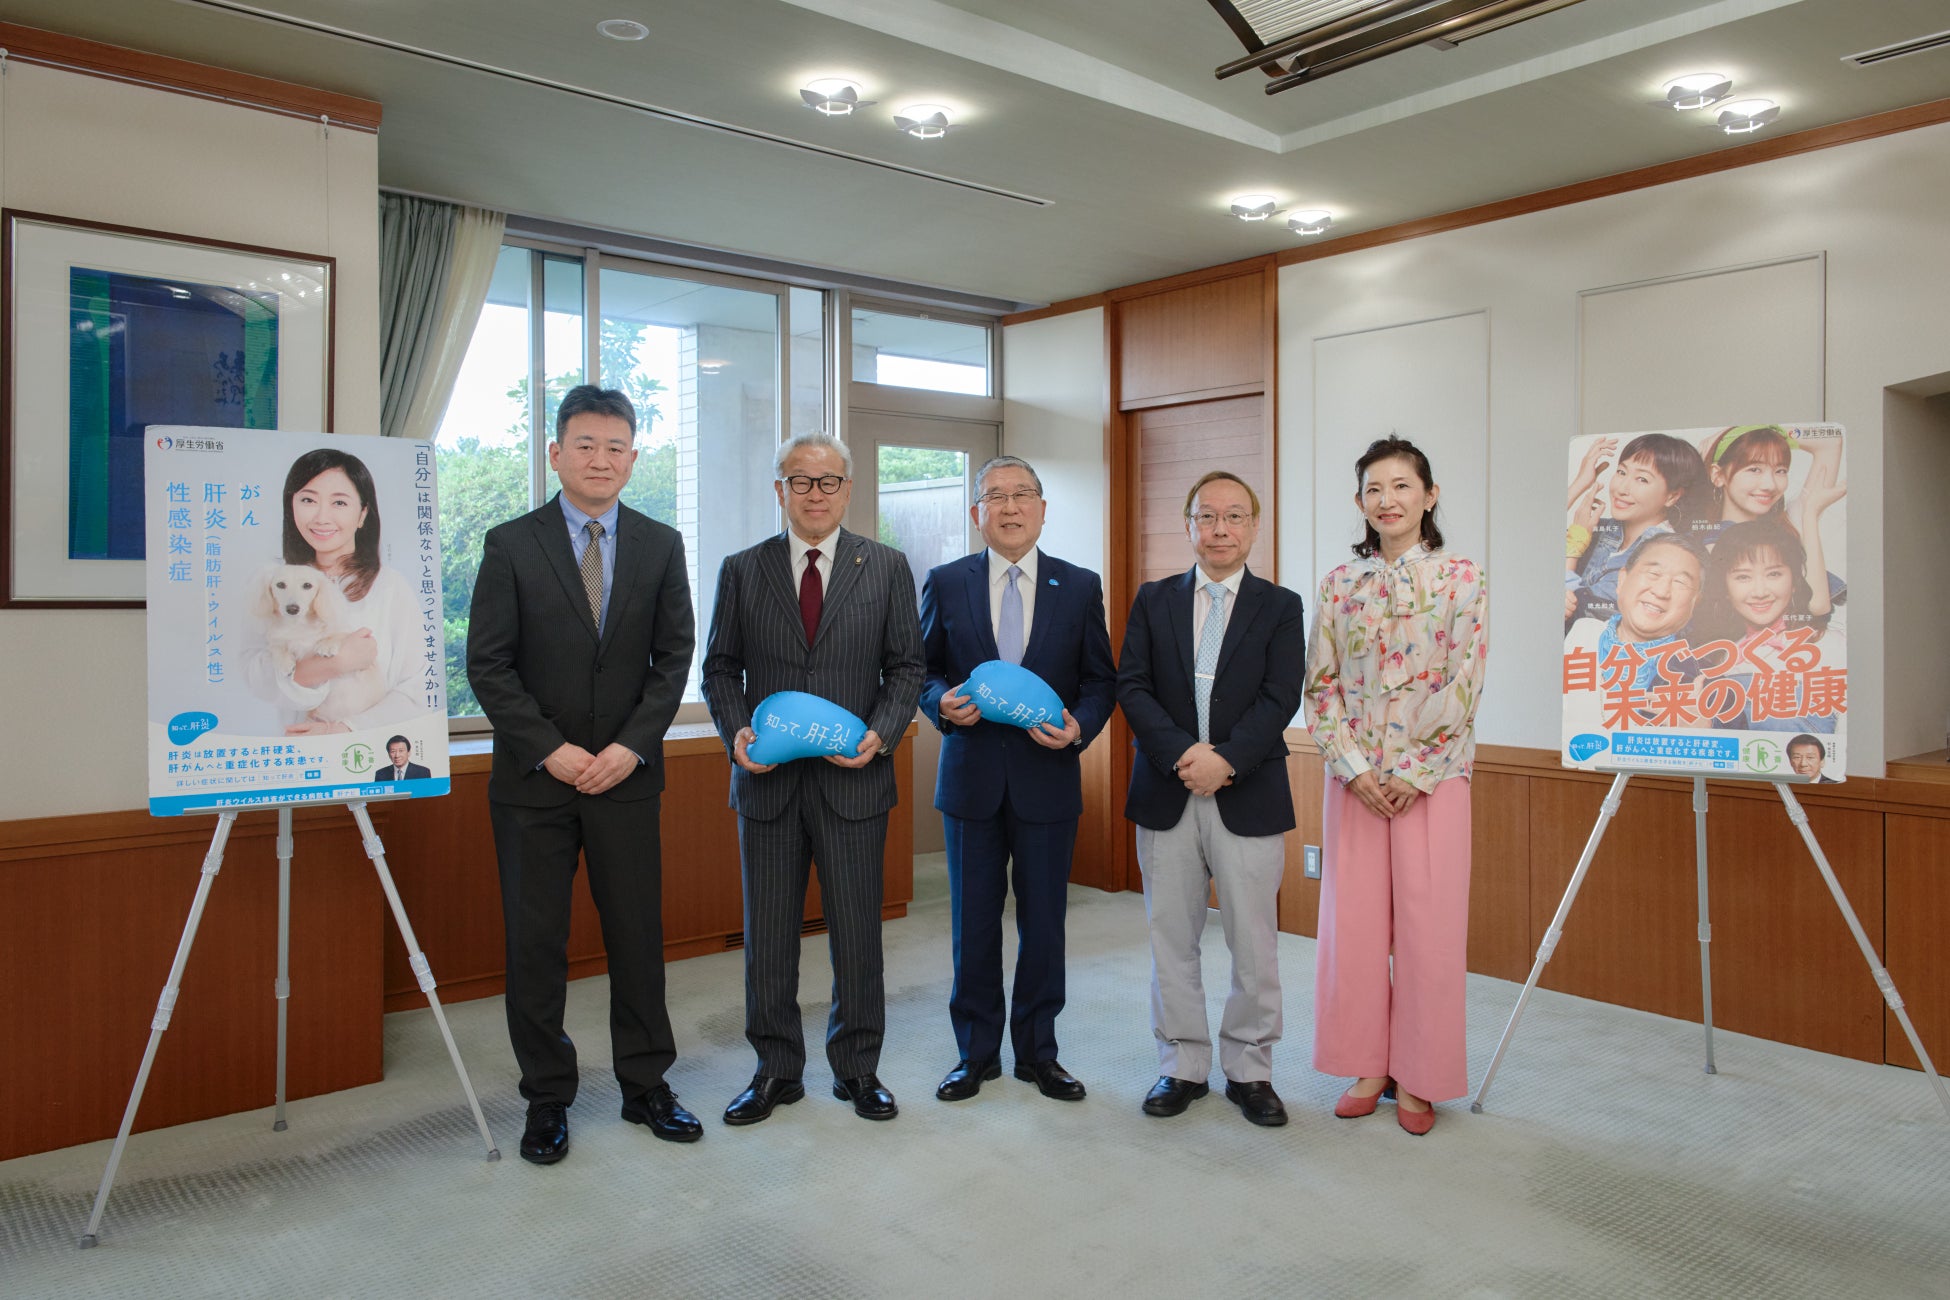 「知って、肝炎プロジェクト」肝炎対策広報大使の徳光和夫氏が豊橋市を訪問。